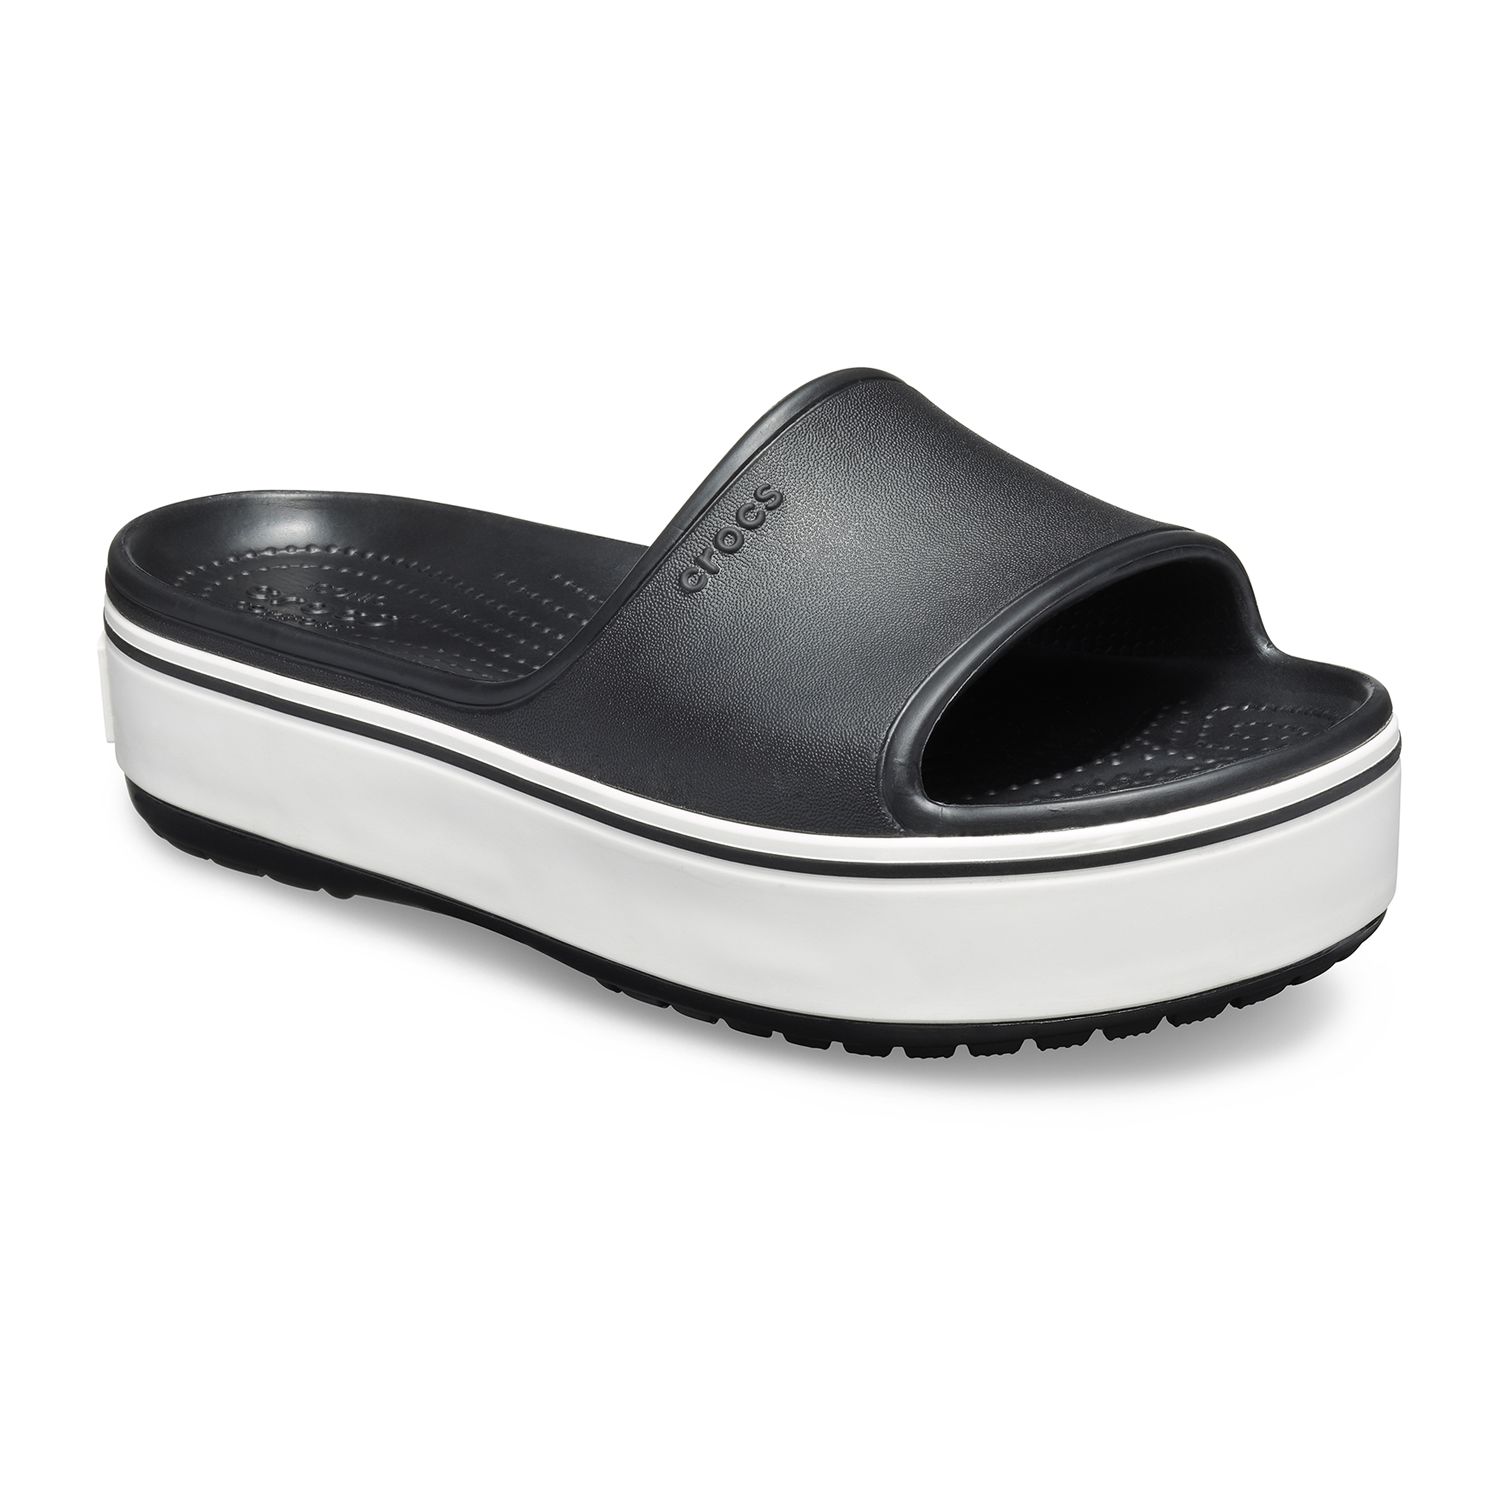 crocs platform slide sandals